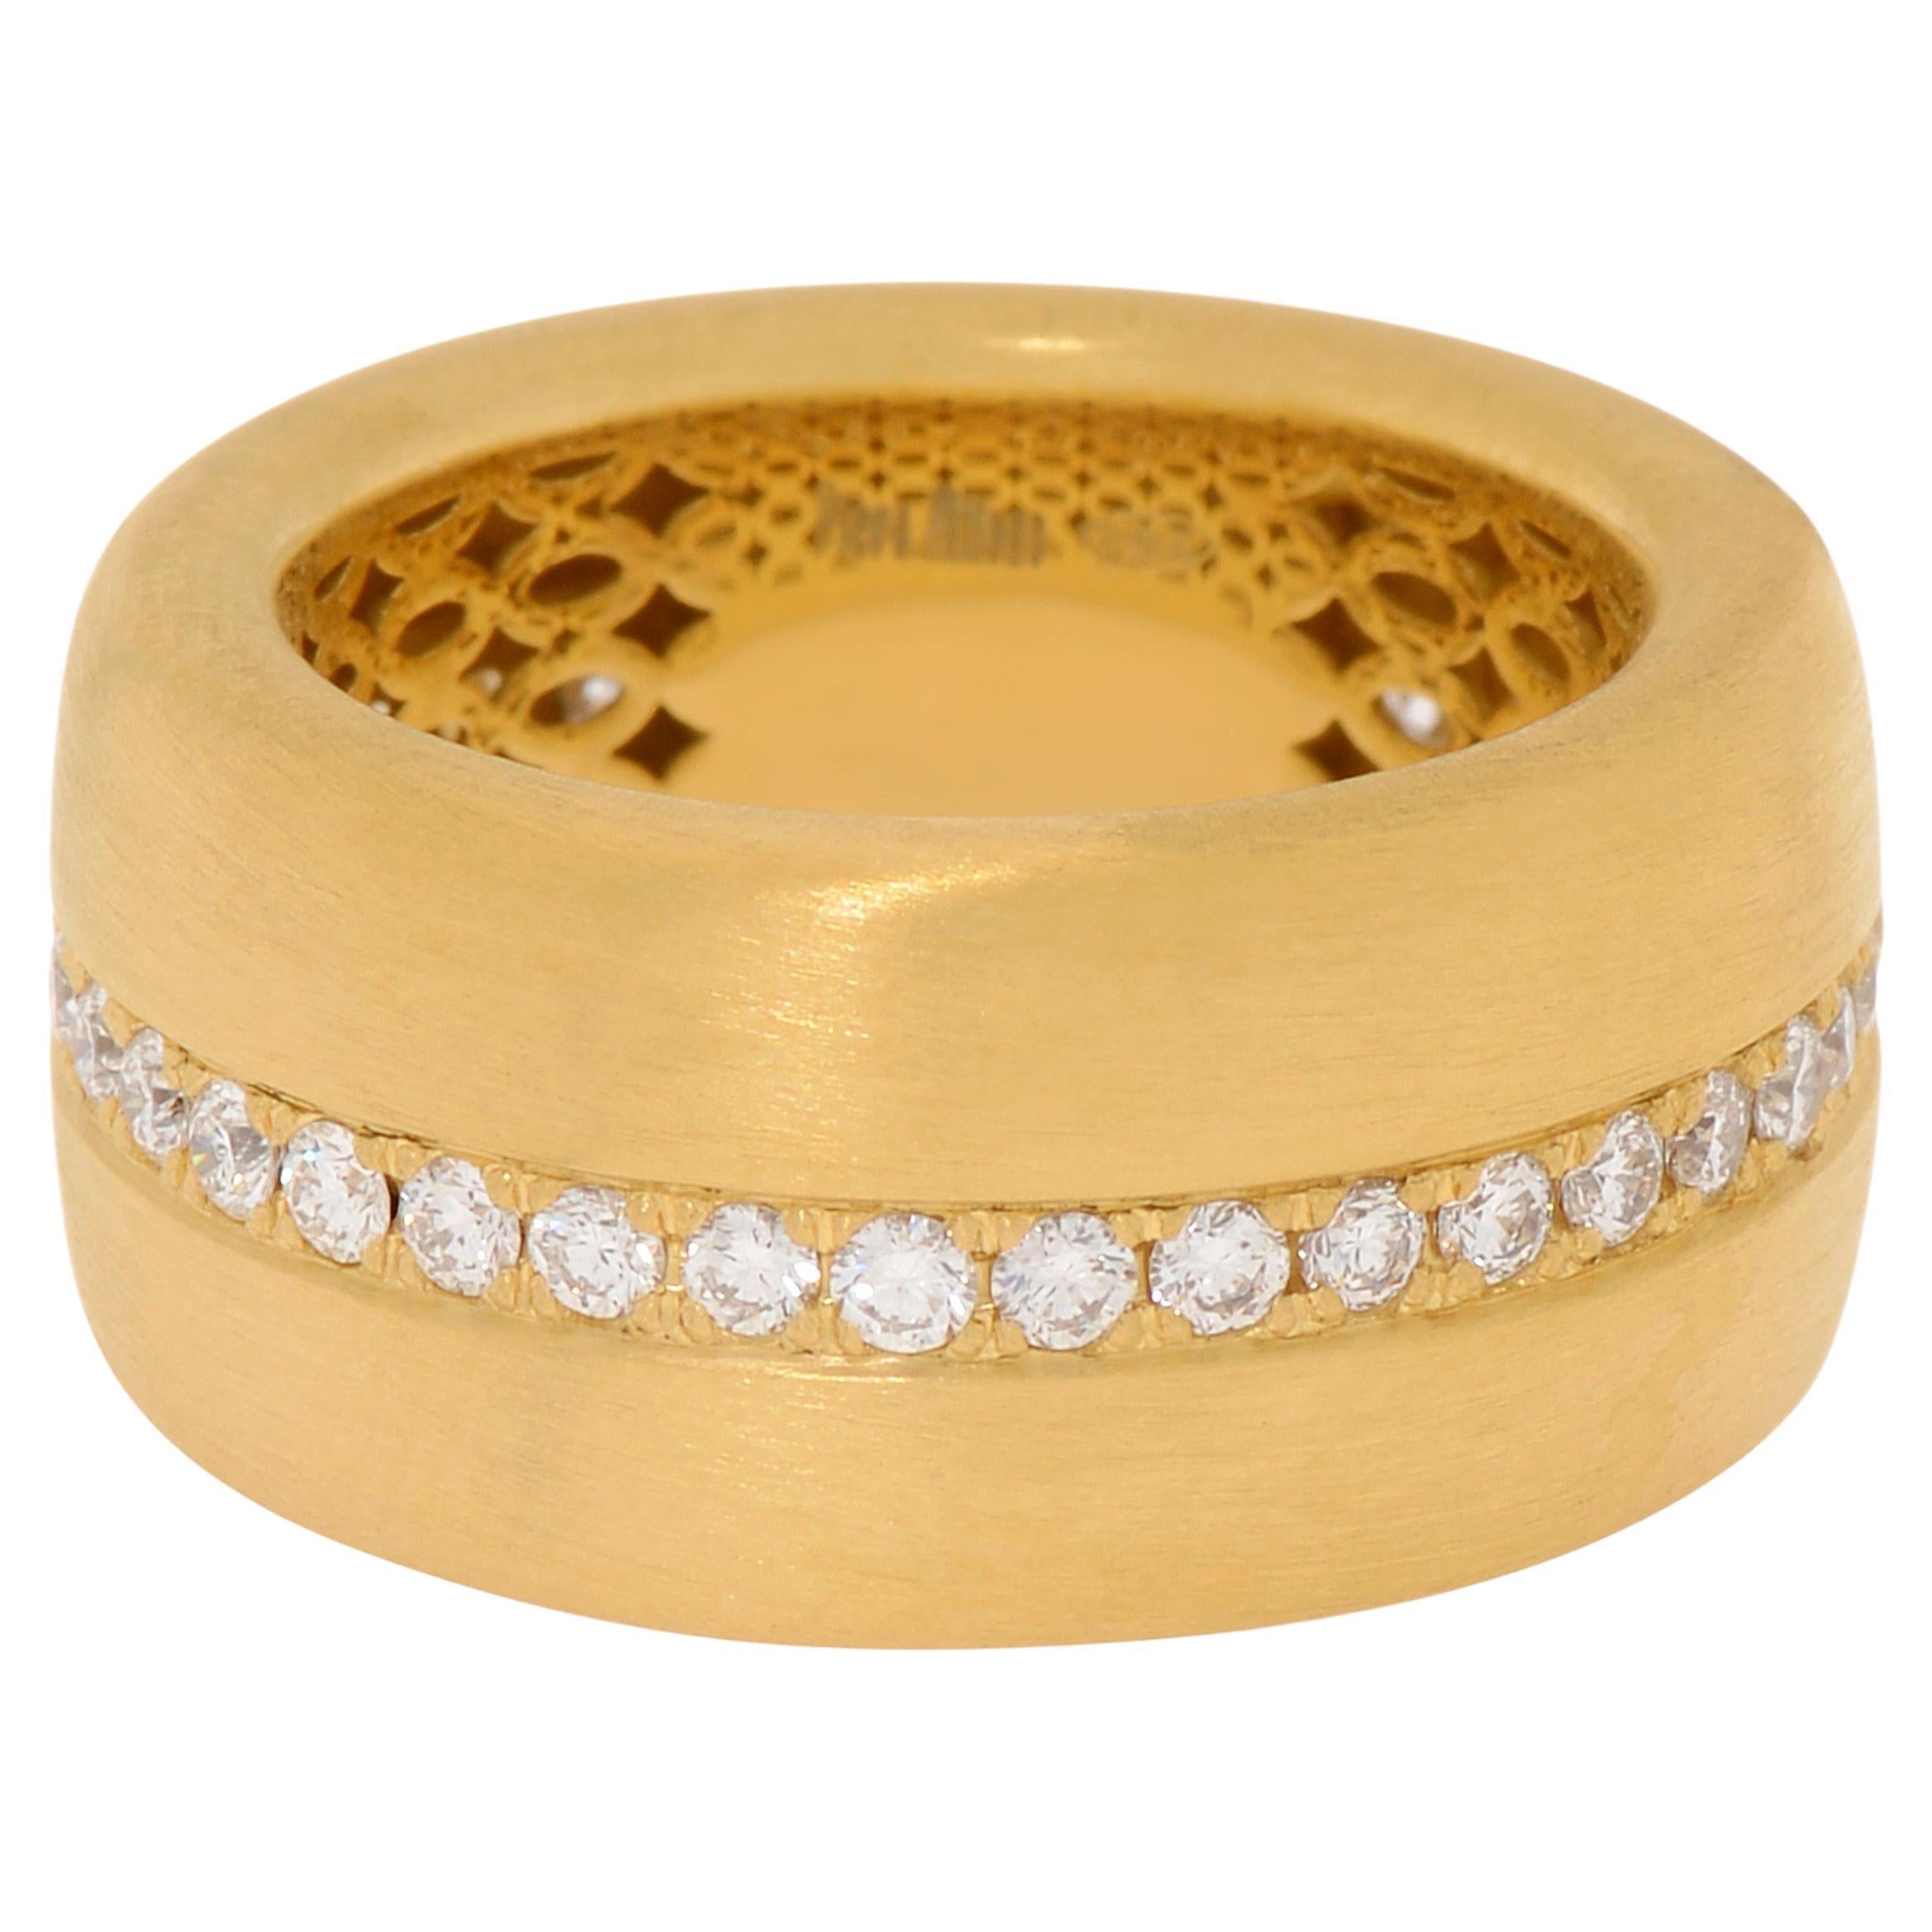 Piero Milano 18K Yellow Gold Diamond Ring Sz 7.25 For Sale